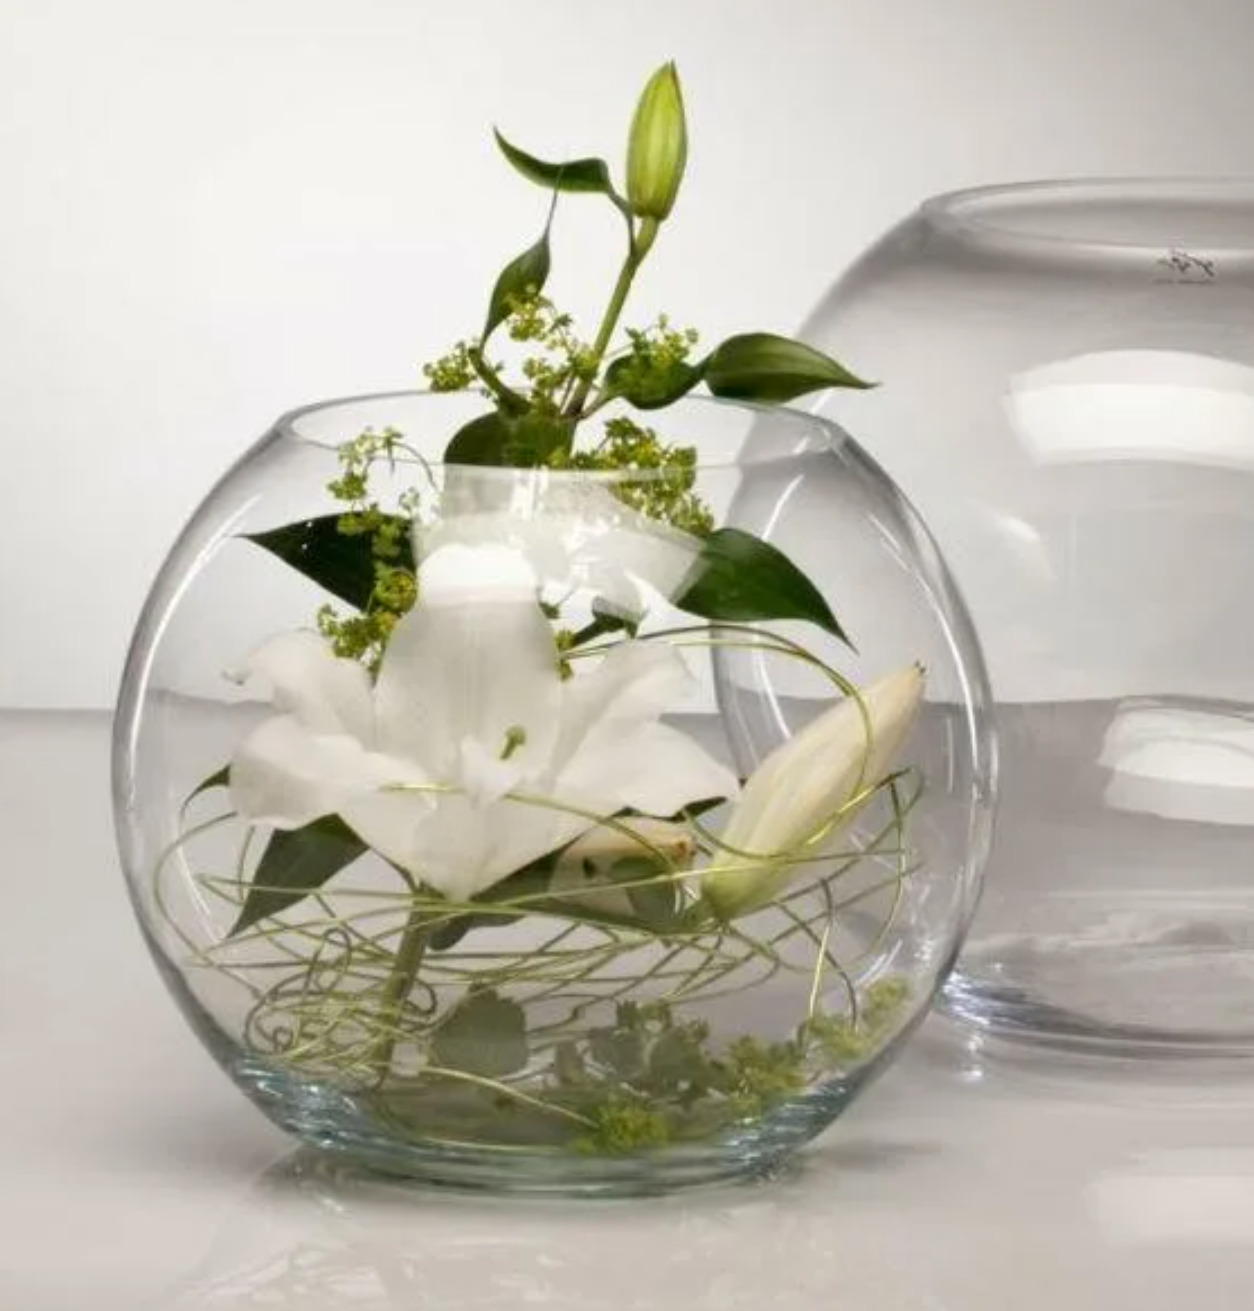 стеклянные вазы в интерьере